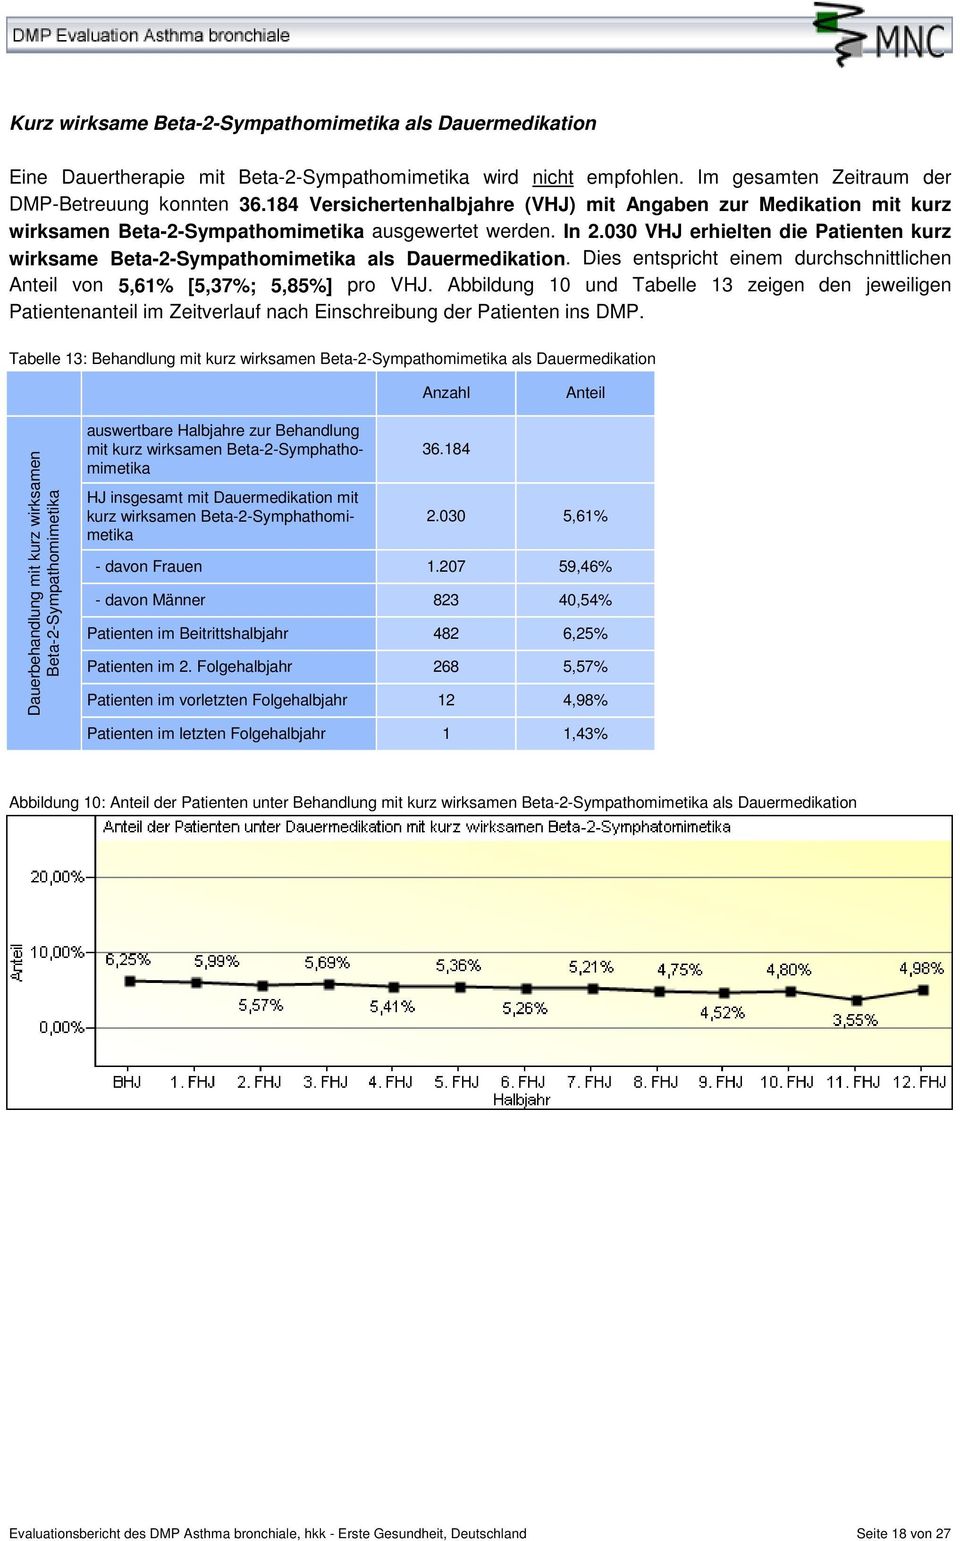 030 VHJ erhielten die Patienten kurz wirksame Beta-2-Sympathomimetika als Dauermedikation. Dies entspricht einem durchschnittlichen von 5,61% [5,37%; 5,85%] pro VHJ.